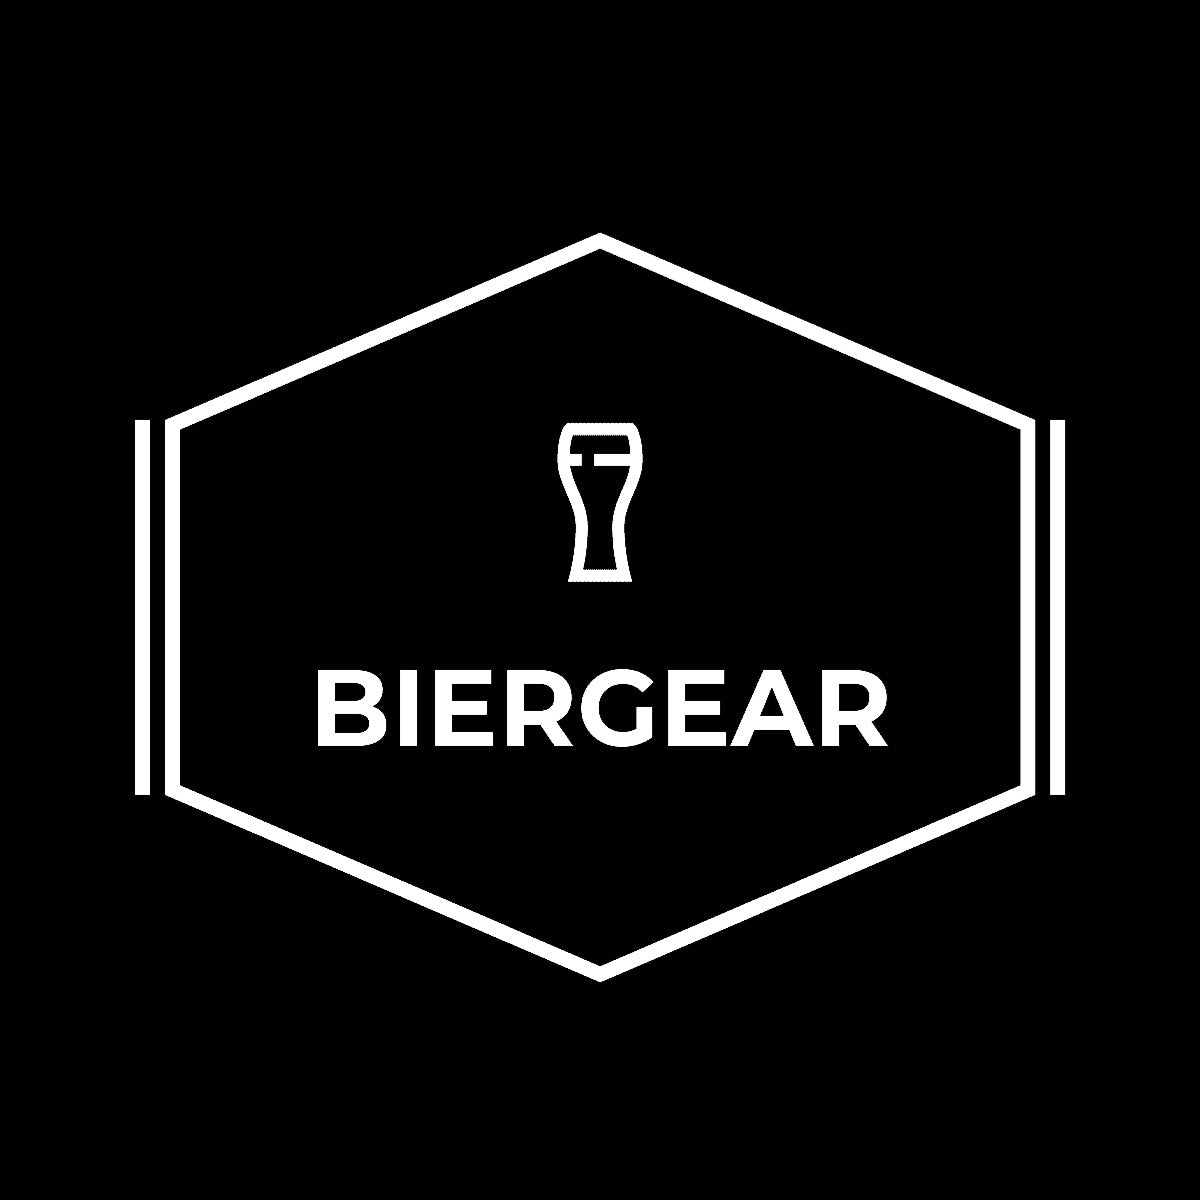 BierGear